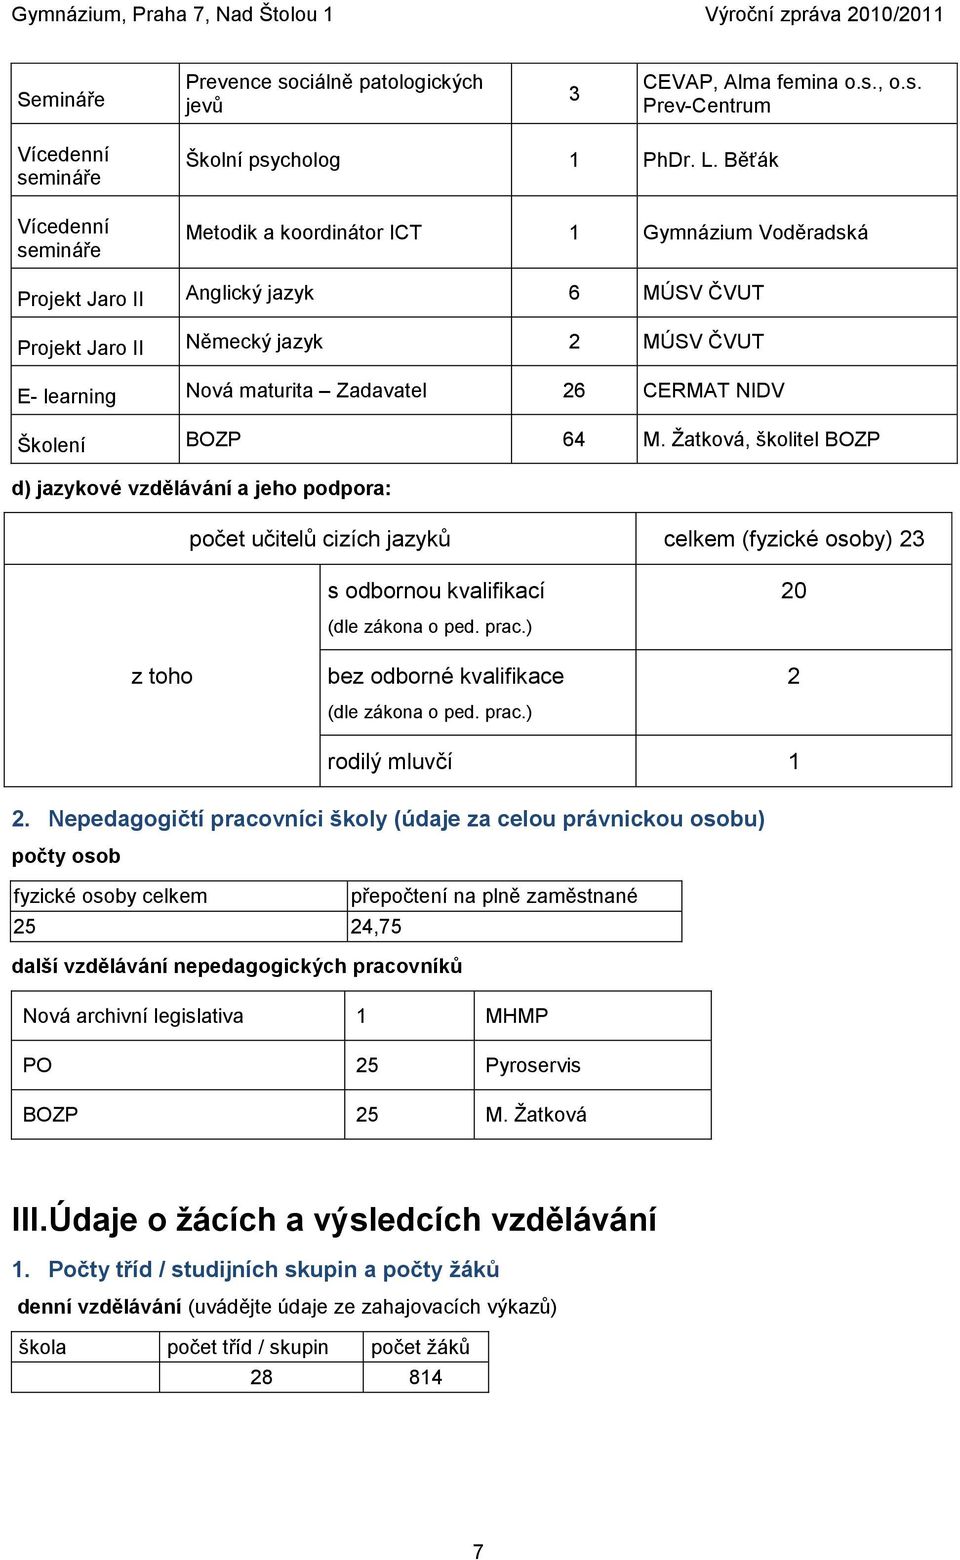 BOZP 64 M. Ţatková, školitel BOZP d) jazykové vzdělávání a jeho podpora: počet učitelů cizích jazyků celkem (fyzické osoby) 23 s odbornou kvalifikací 20 z toho (dle zákona o ped. prac.